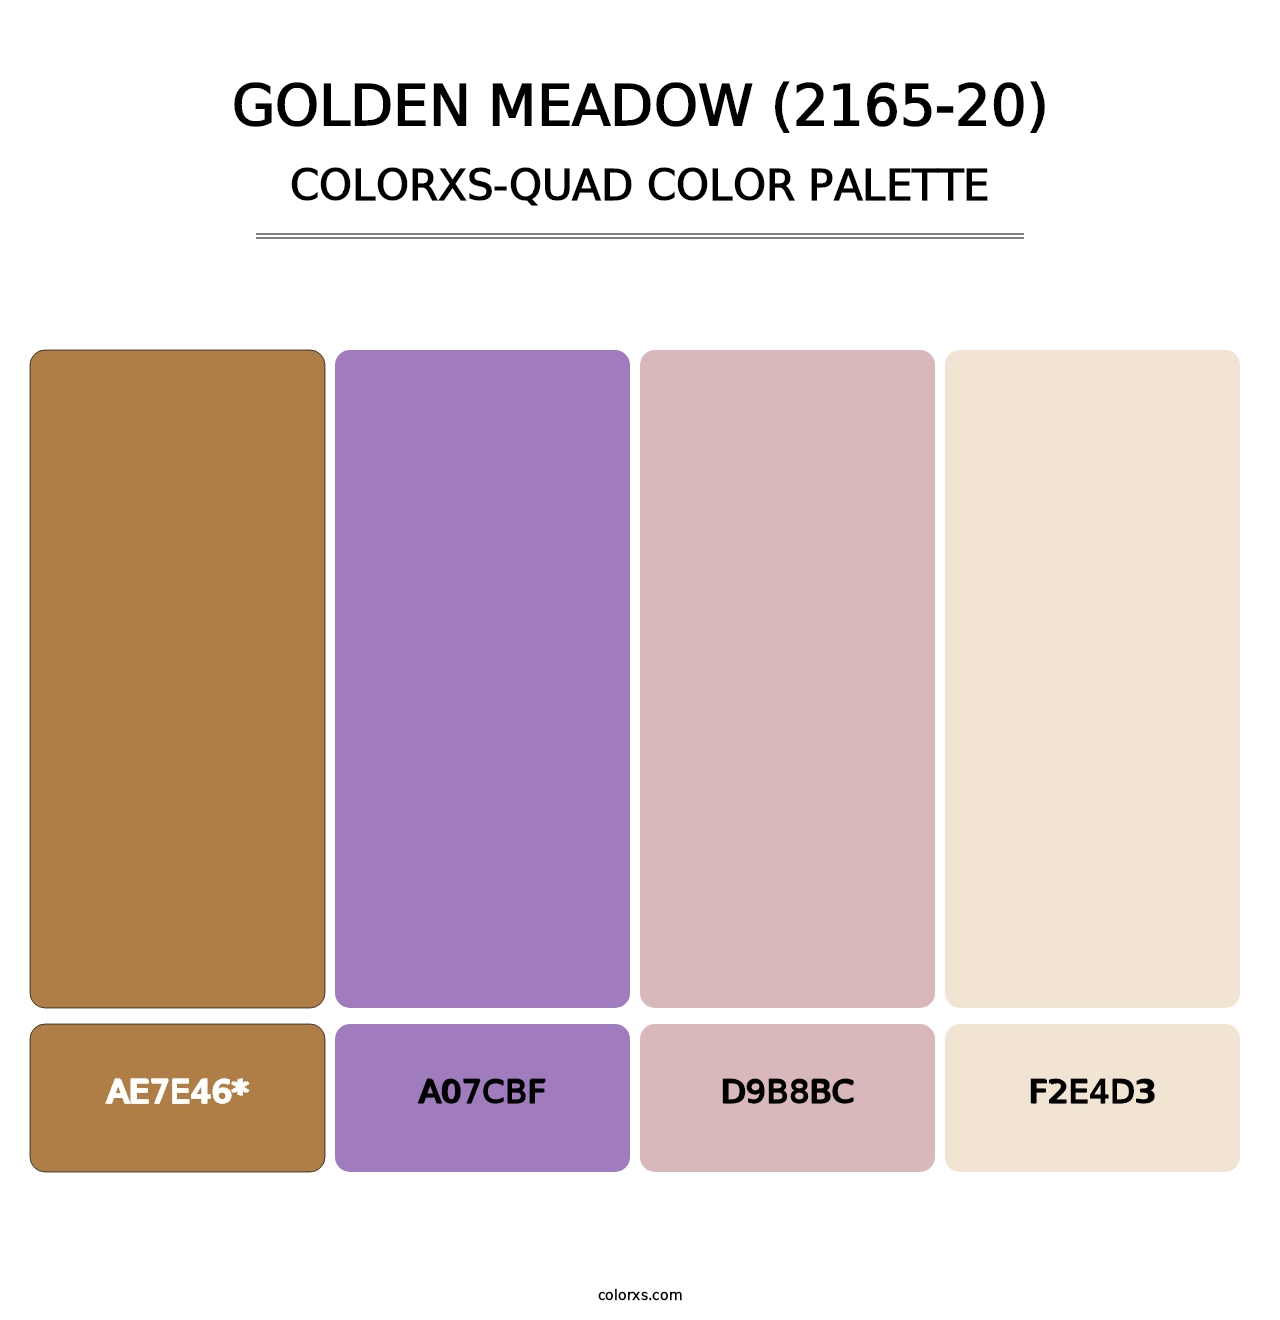 Golden Meadow (2165-20) - Colorxs Quad Palette